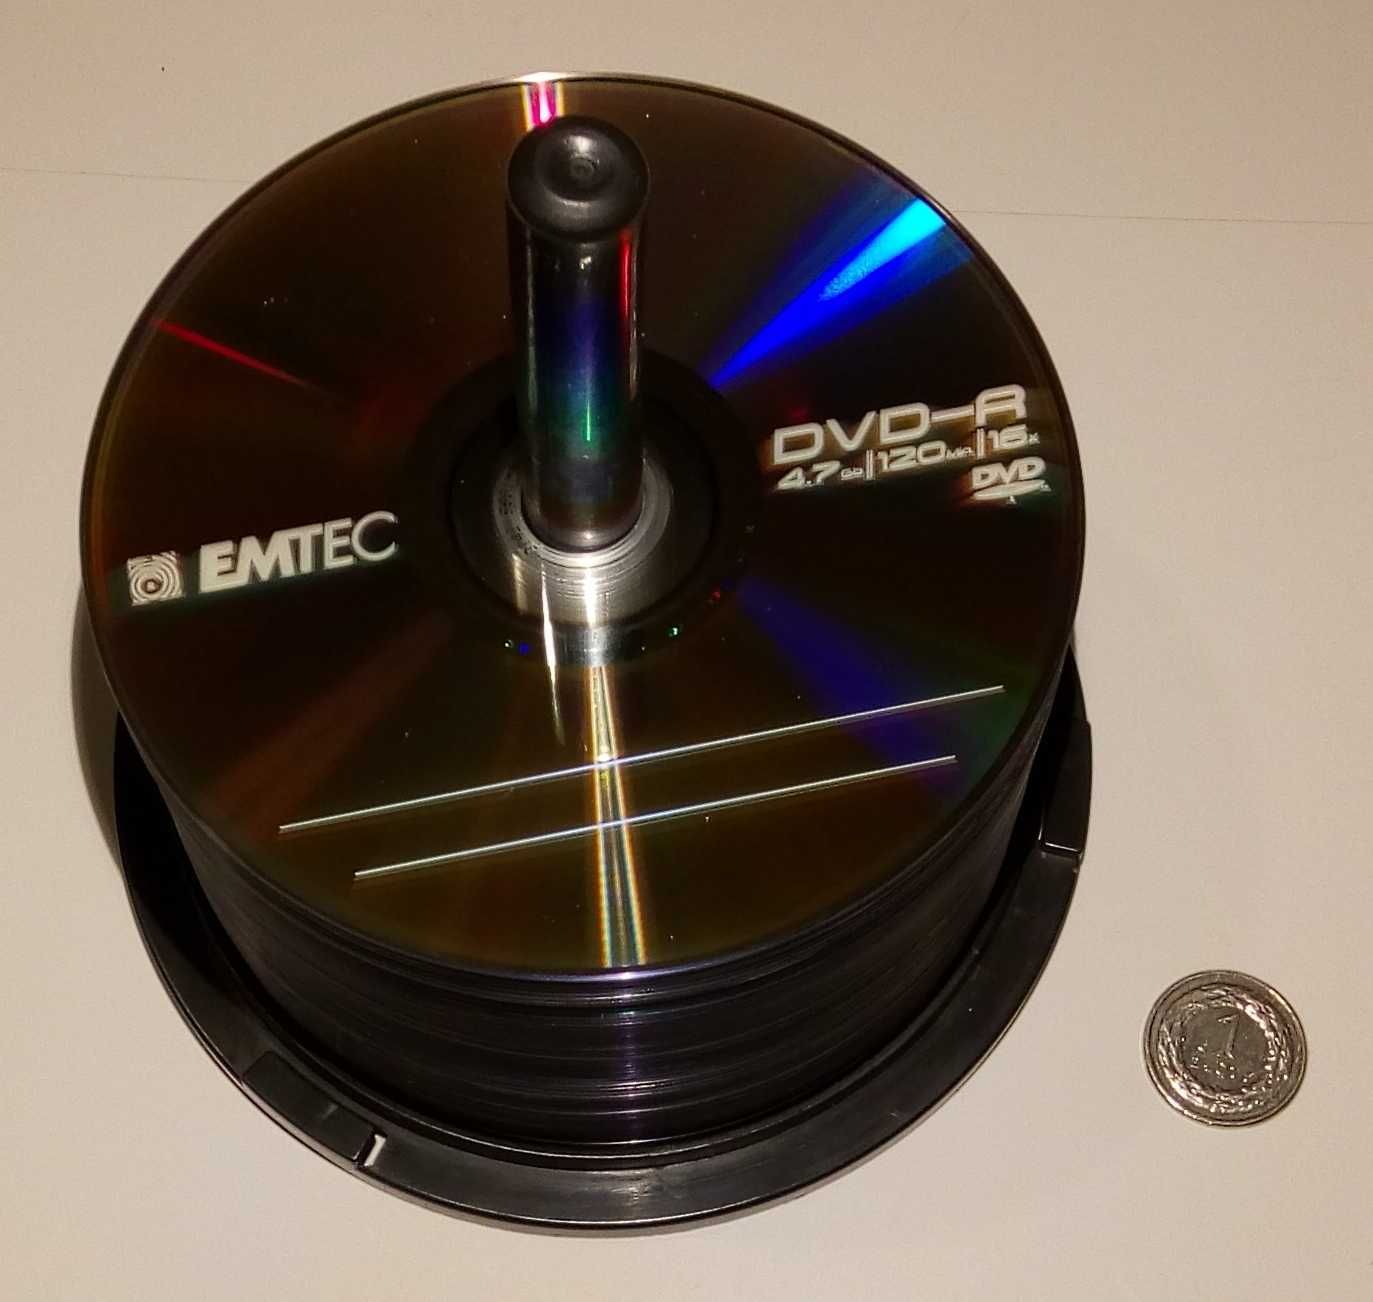 EMTEC - Płyta DVD-R, 4,7 GB, 16x (59szt.)